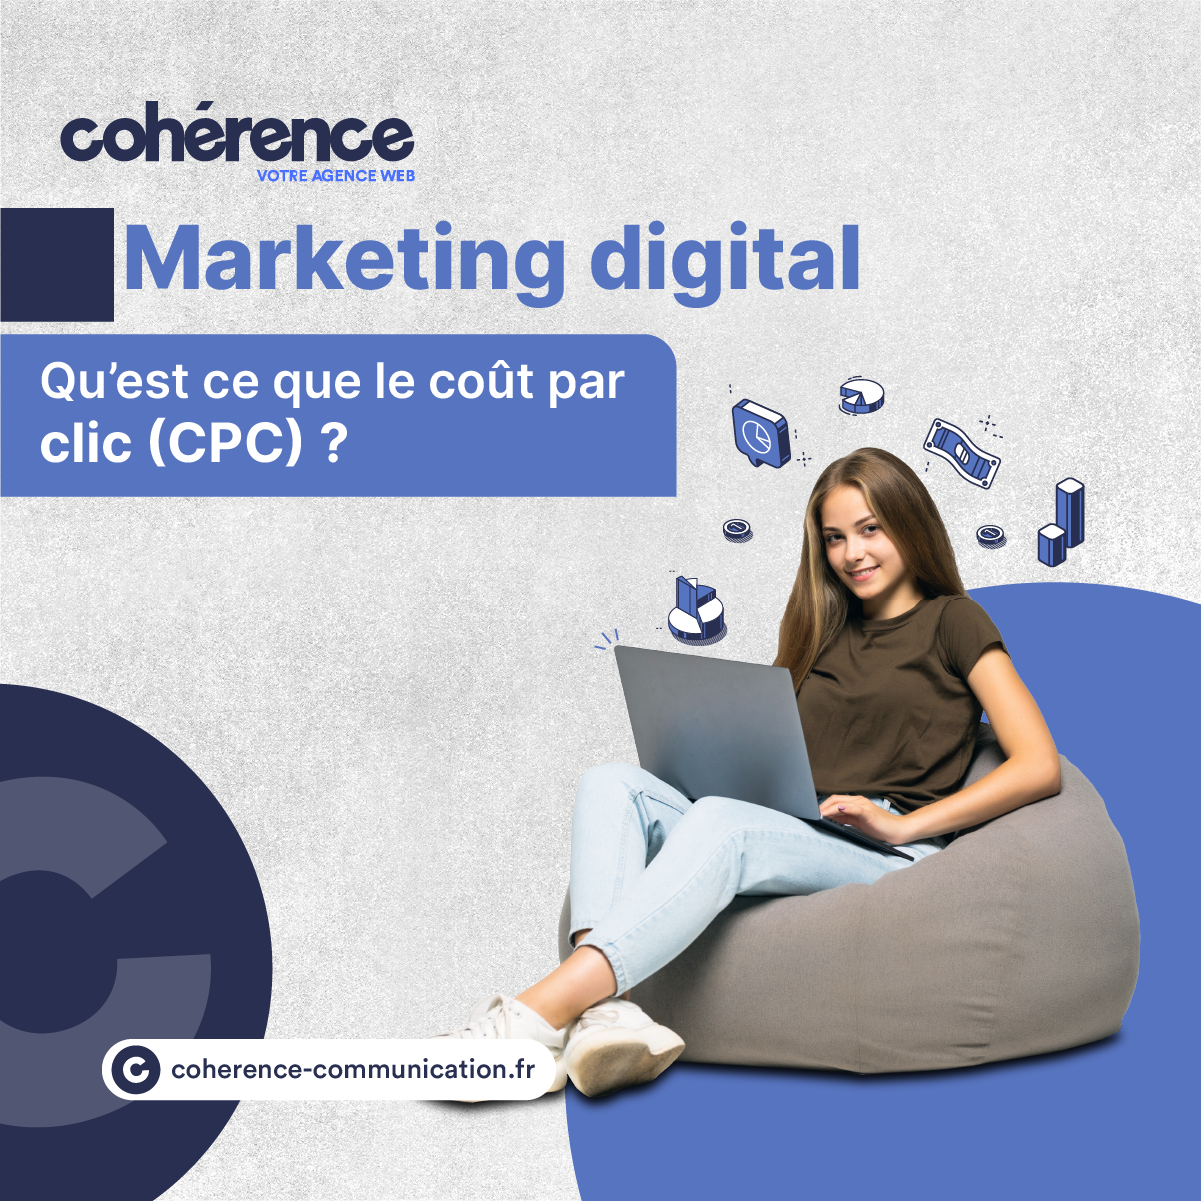 Coherence Agence Digitale Publicite En Ligne 